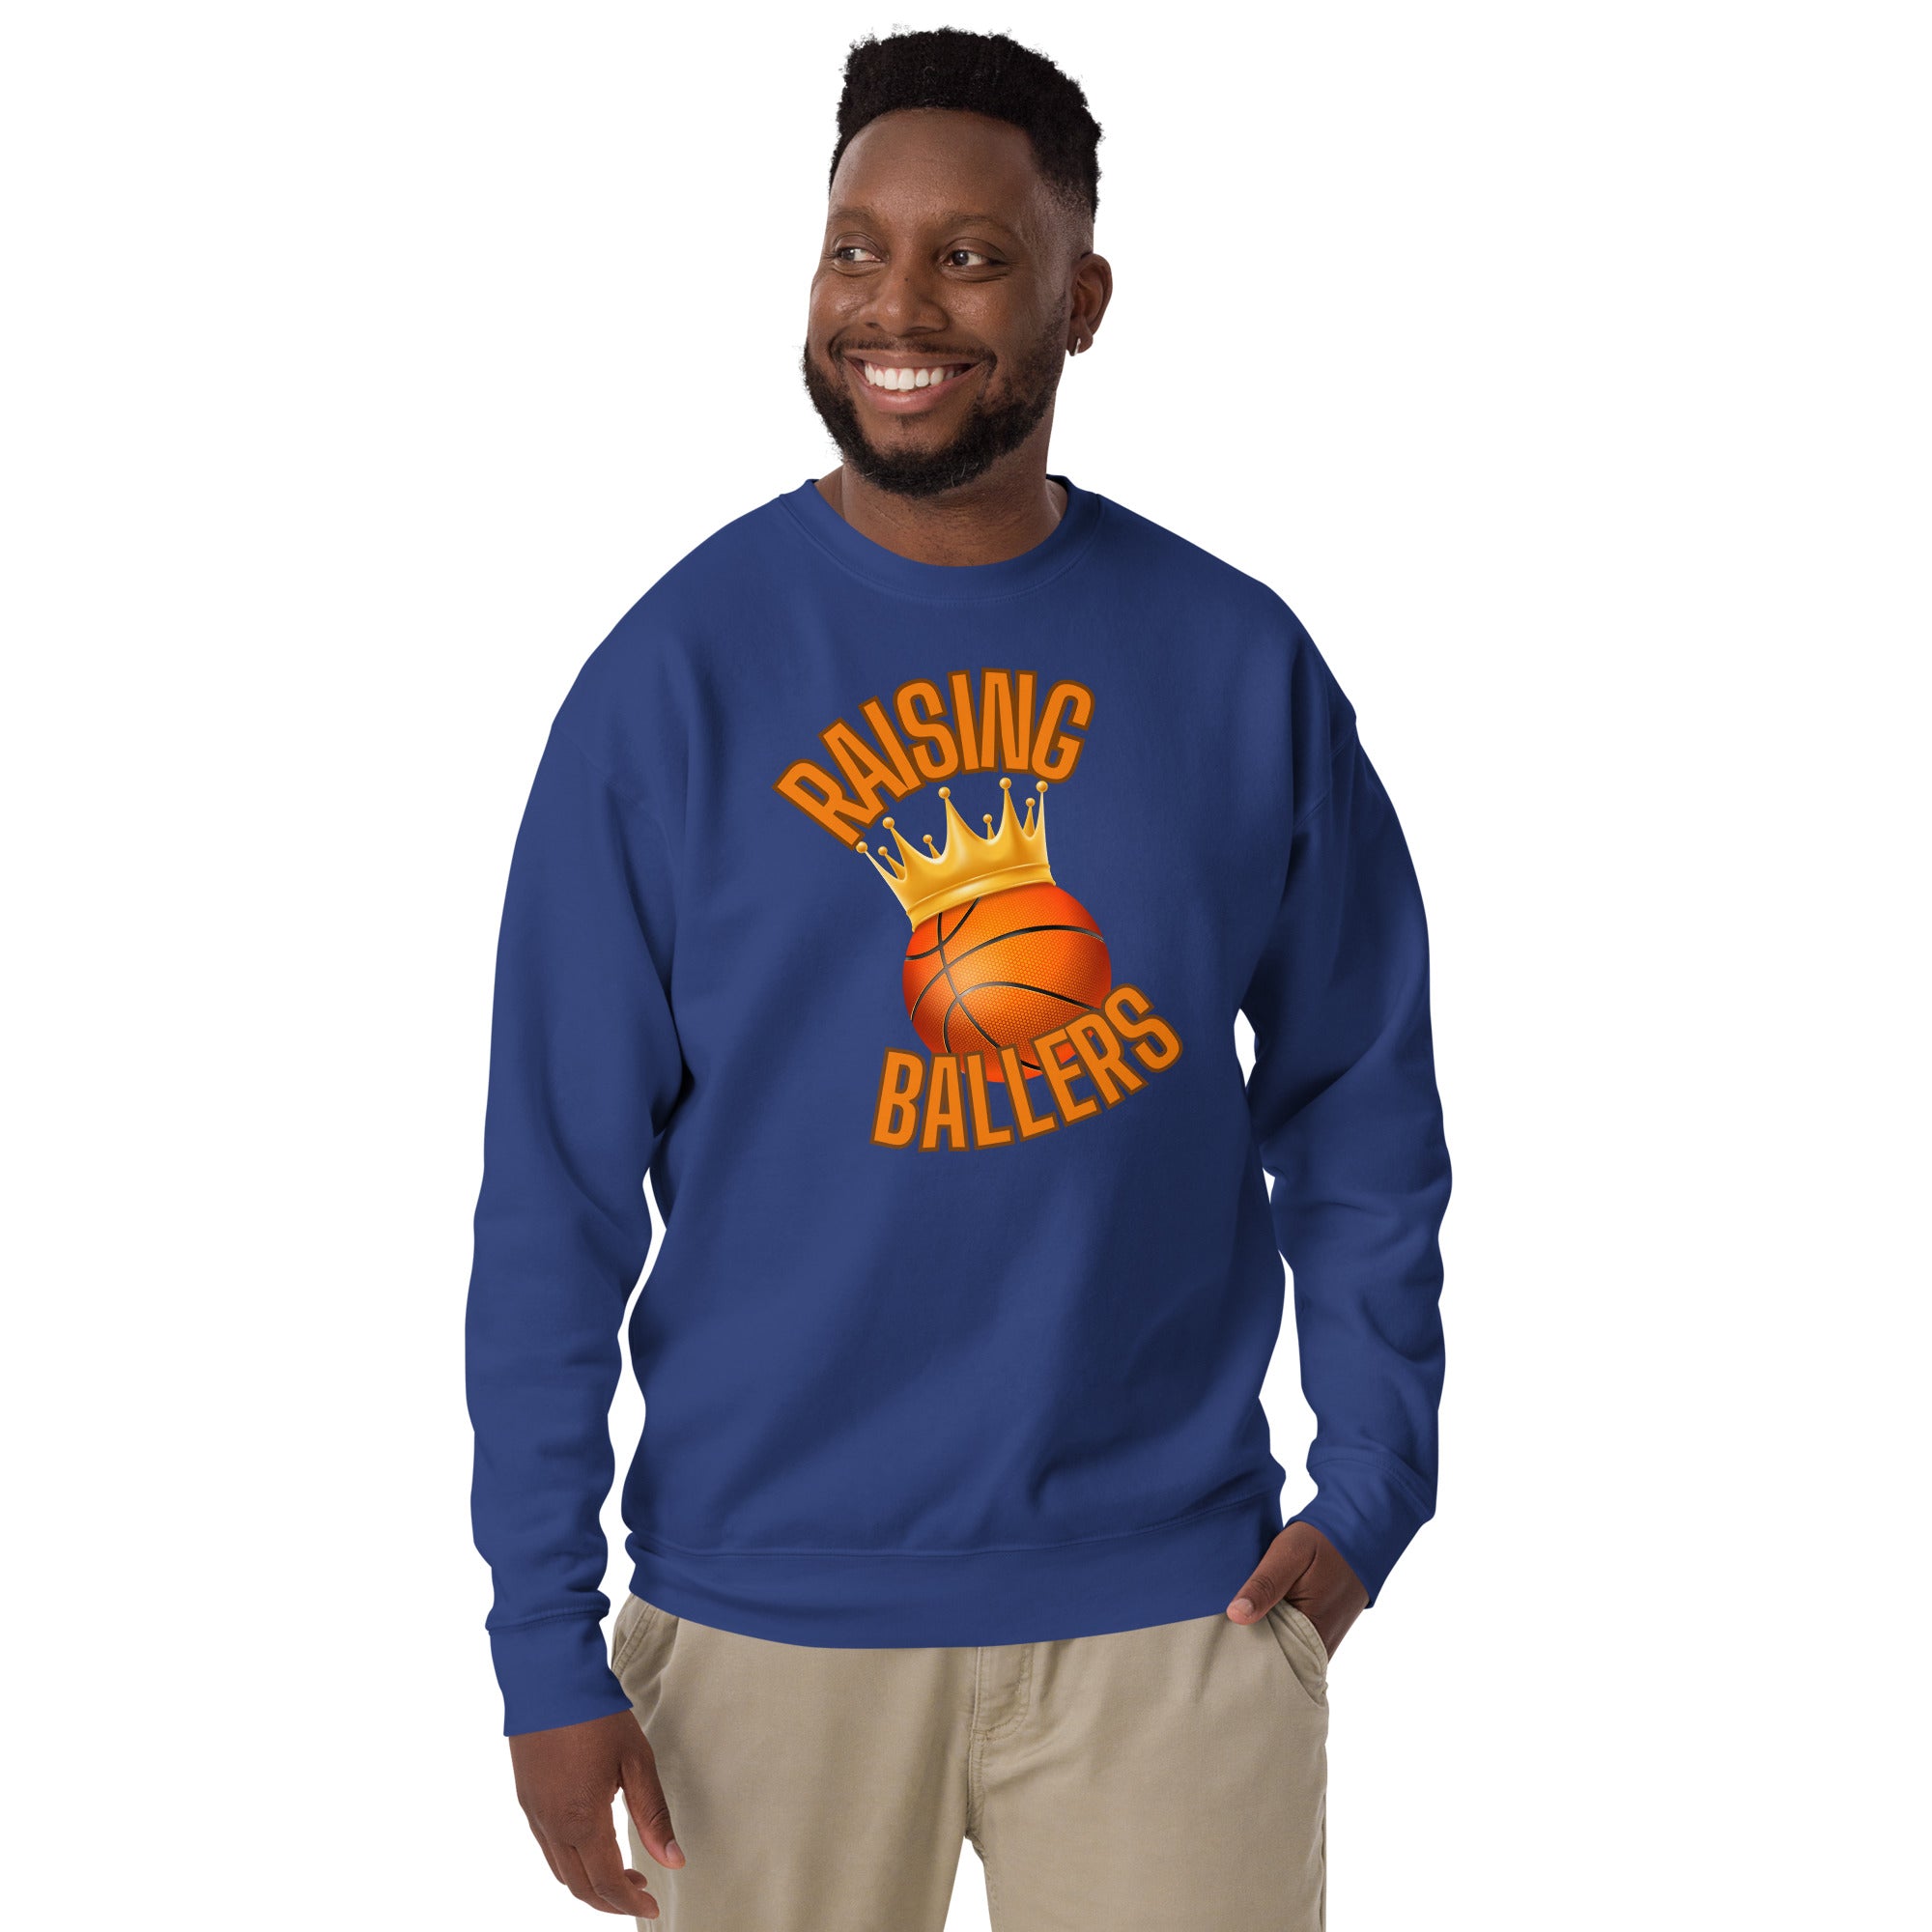 Raising Ballers Men's Heavy Crew Sweatshirt